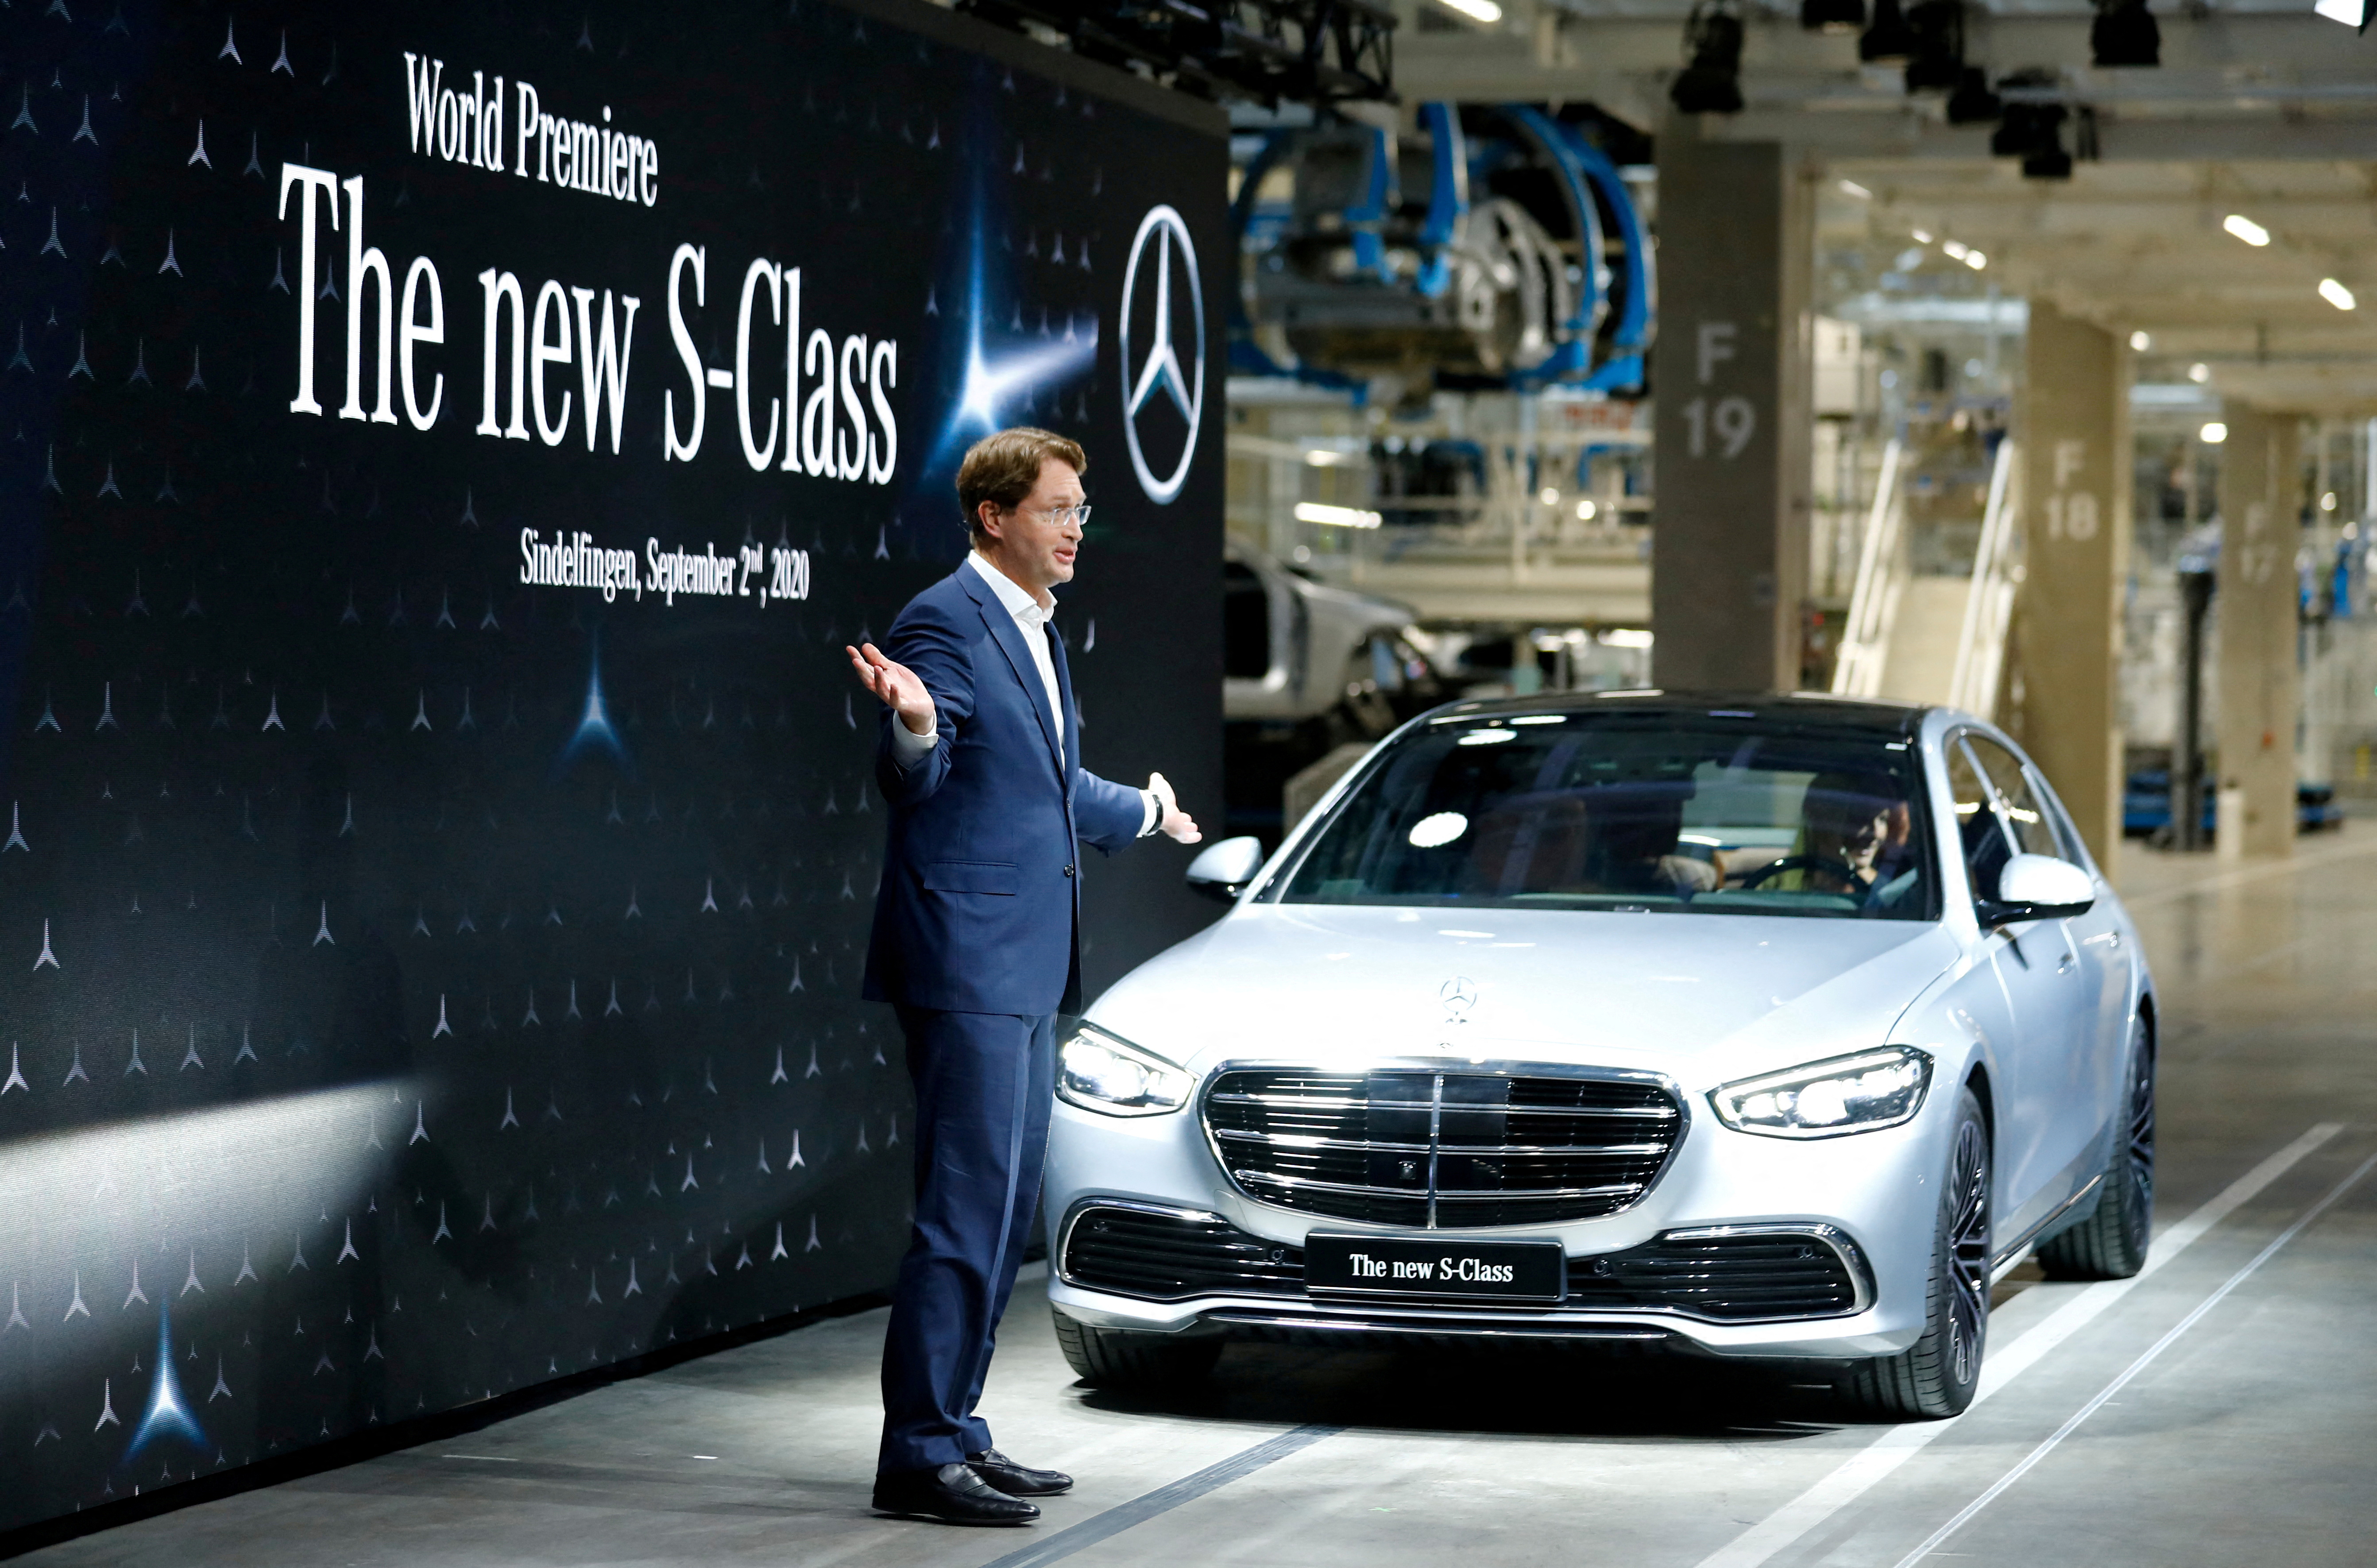 Daimler's Mercedes-Benz presents new S-Class